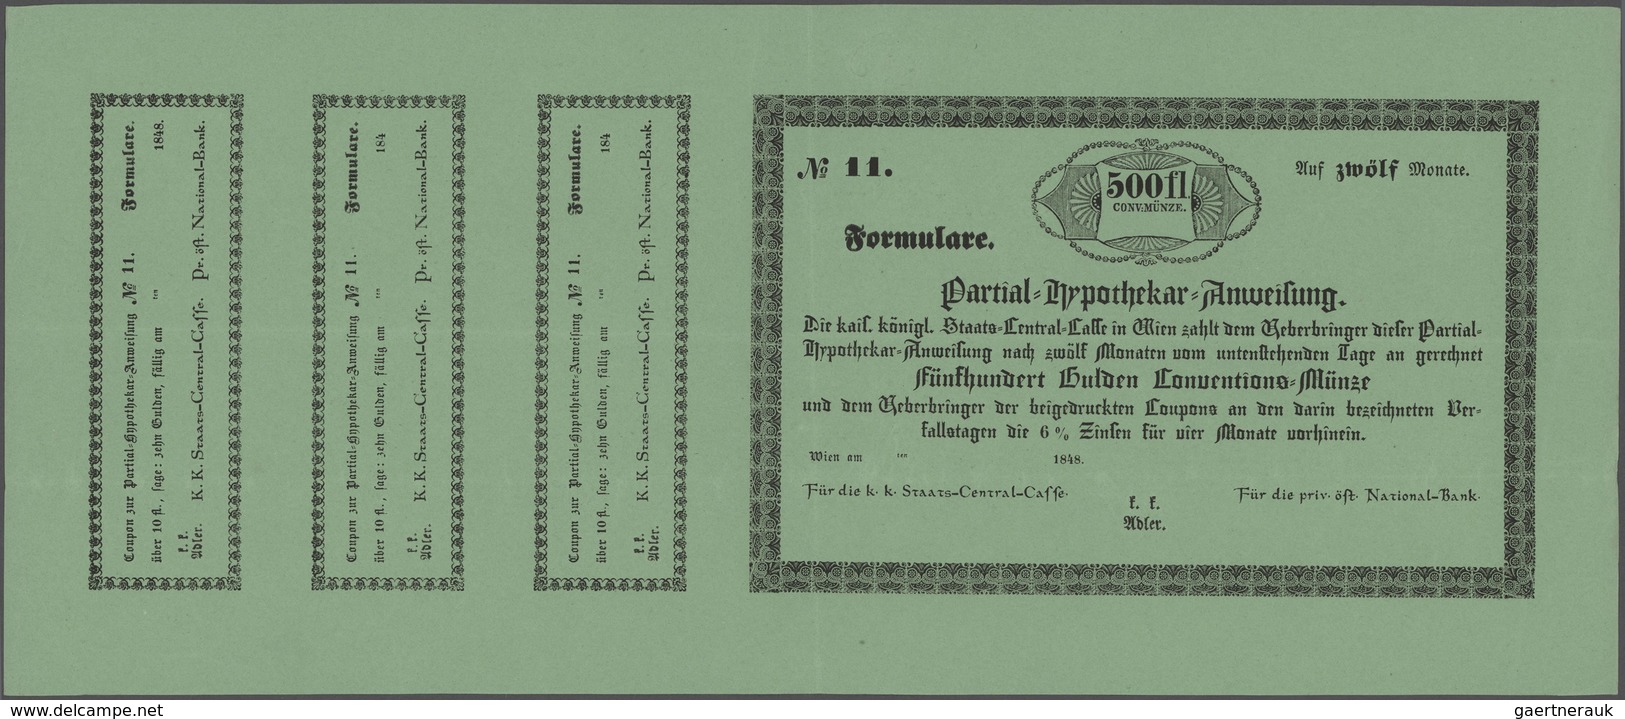 Austria / Österreich: Partial-Hypothekar-Anweisung, 500 Gulden 1848 Formular With 3 Cupons Of 10 Gul - Austria